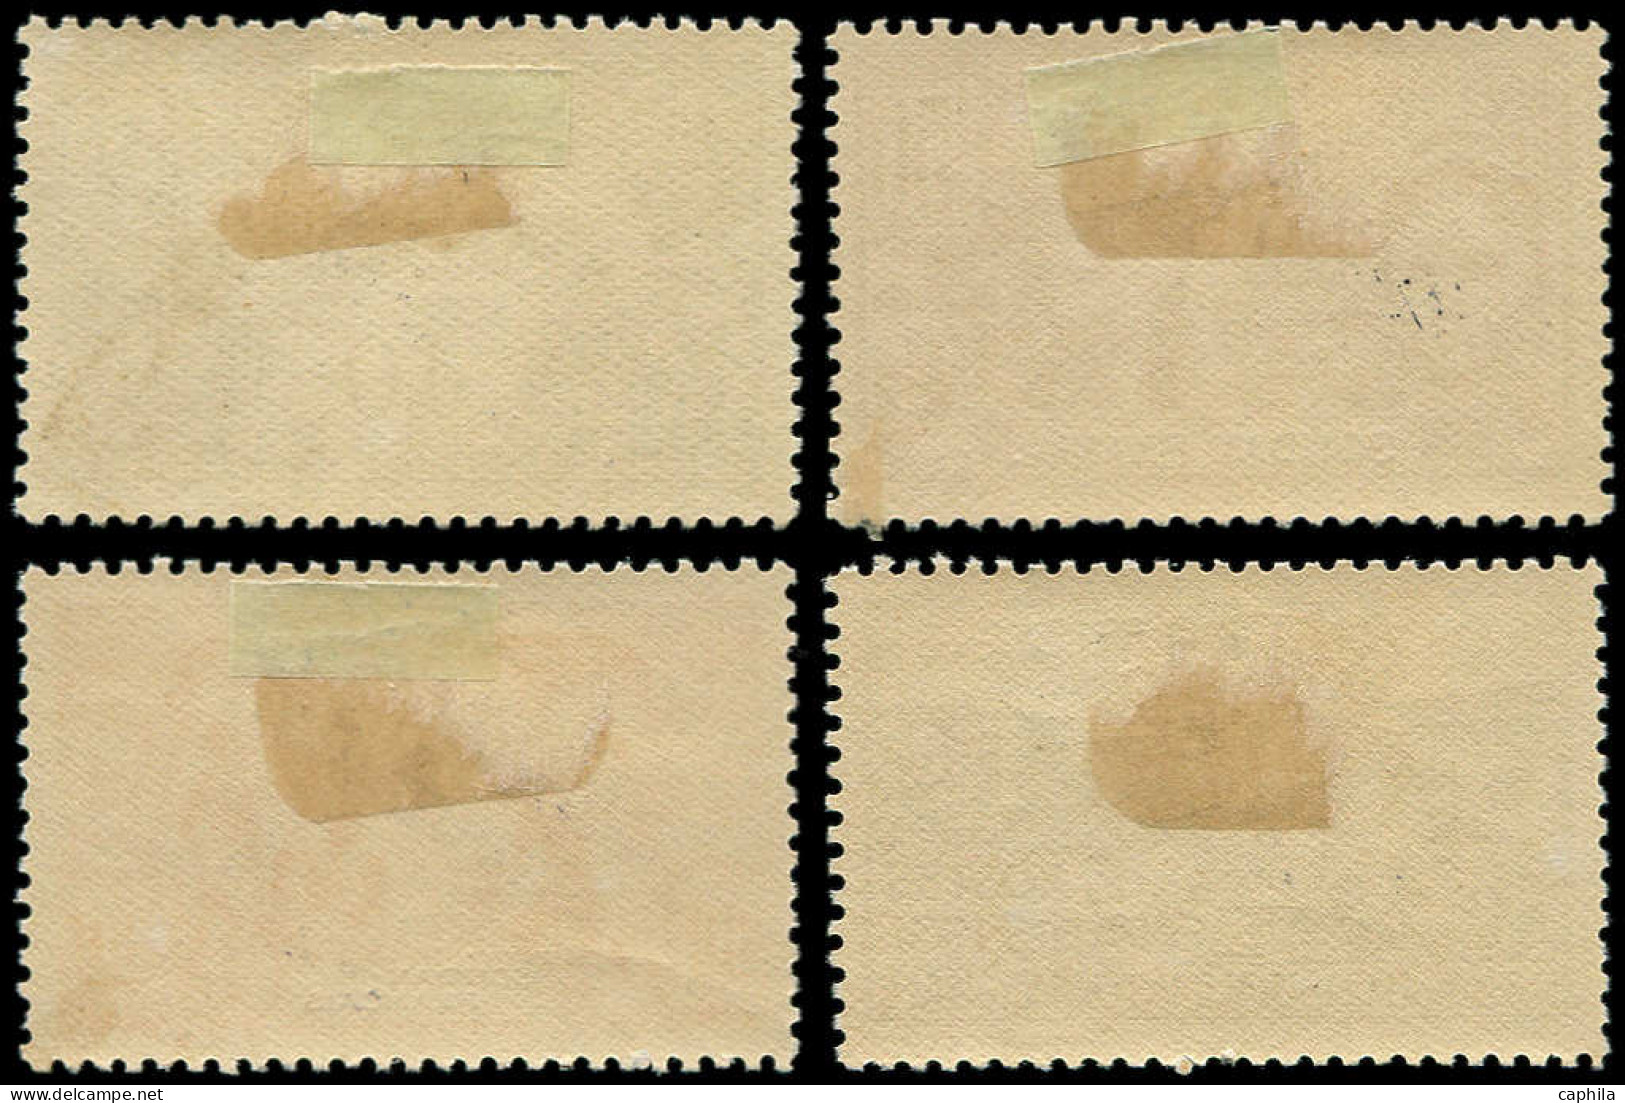 * SOUDAN FRANCAIS - Poste - 89/92, Surchargés "Espècimen": Expo De 1931 - Unused Stamps